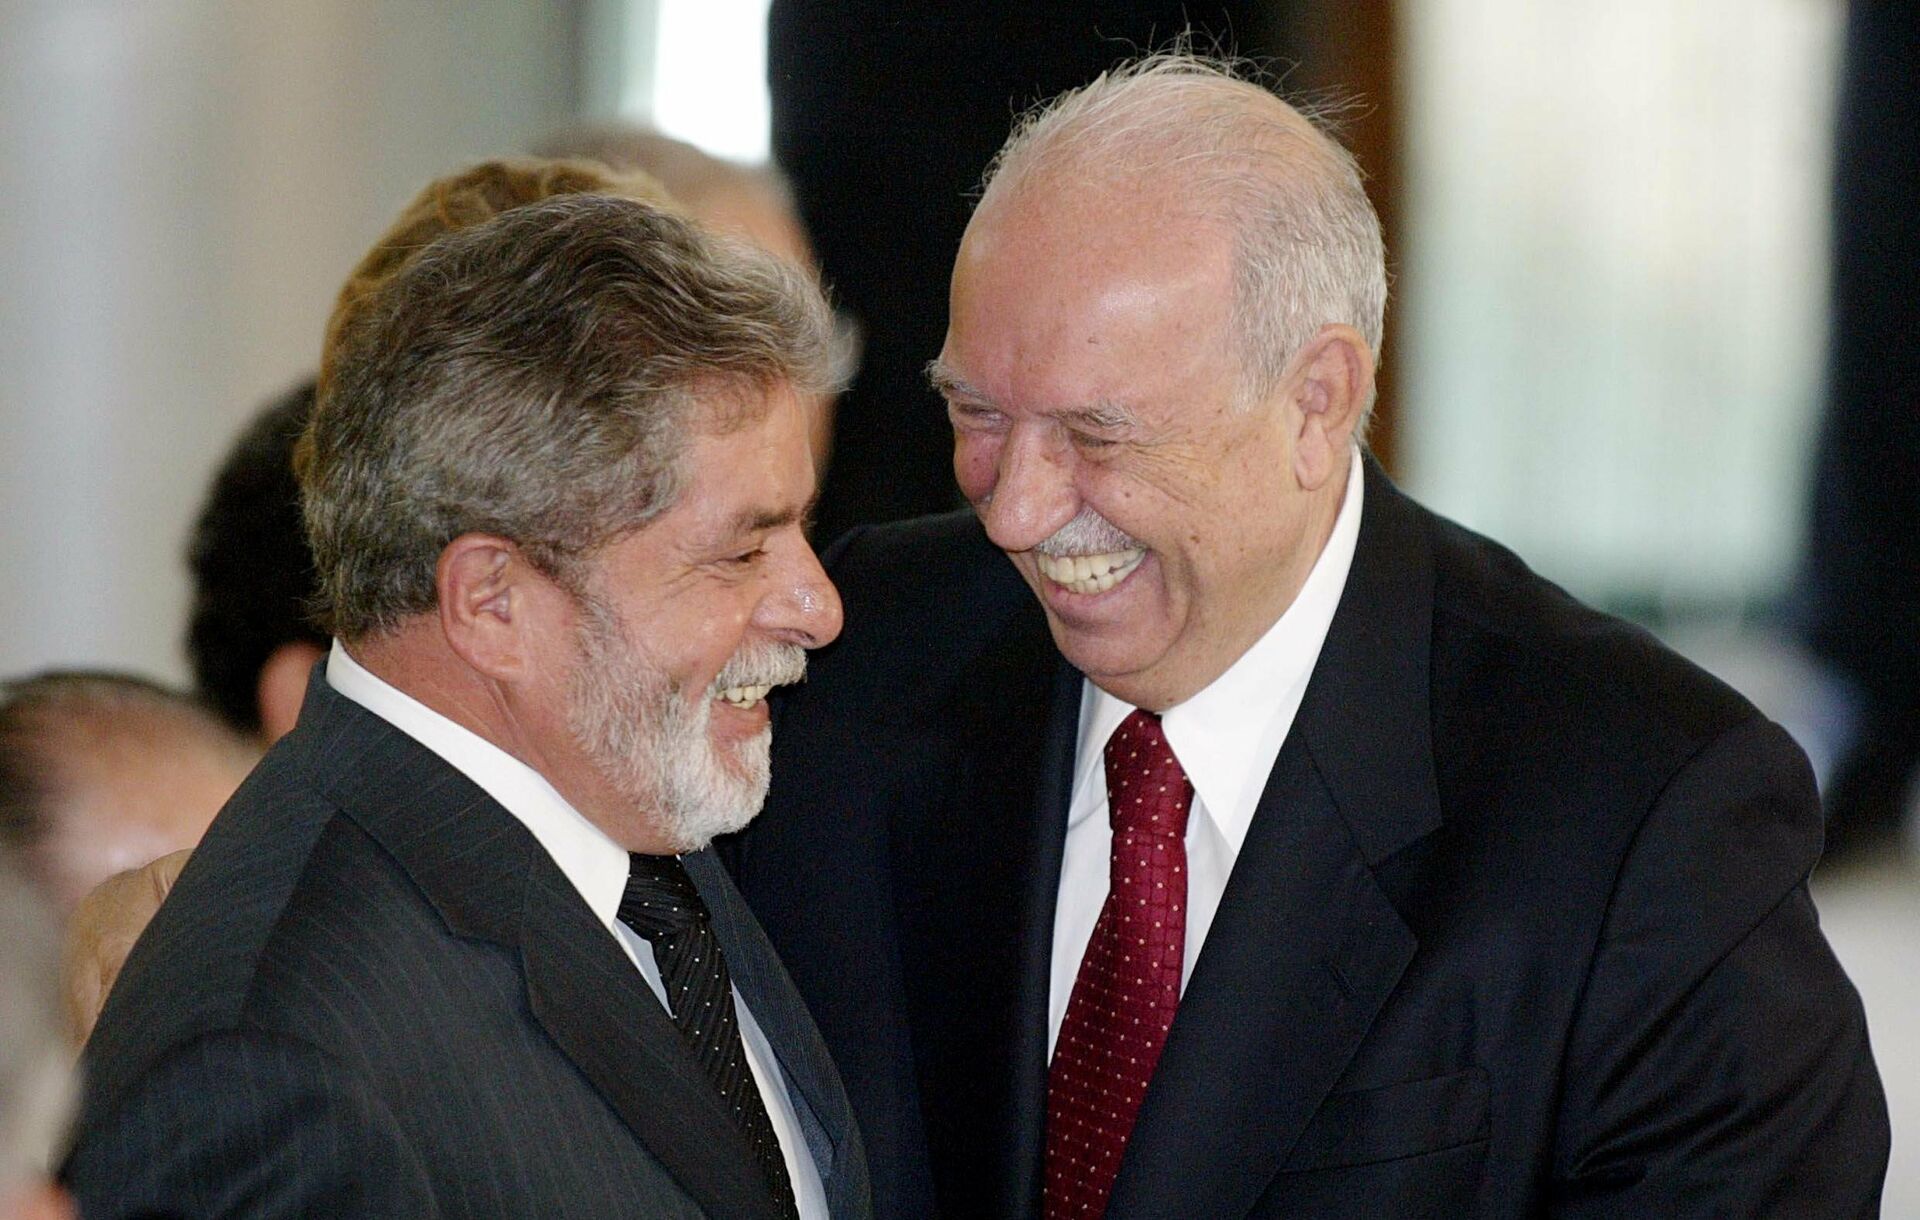 Em Brasília, o ex-presidente Luiz Inácio Lula da Silva (PT), sorri ao lado de José Alencar, então vice-presidente do governo do petista, em 8 de novembro de 2004 - Sputnik Brasil, 1920, 20.12.2021